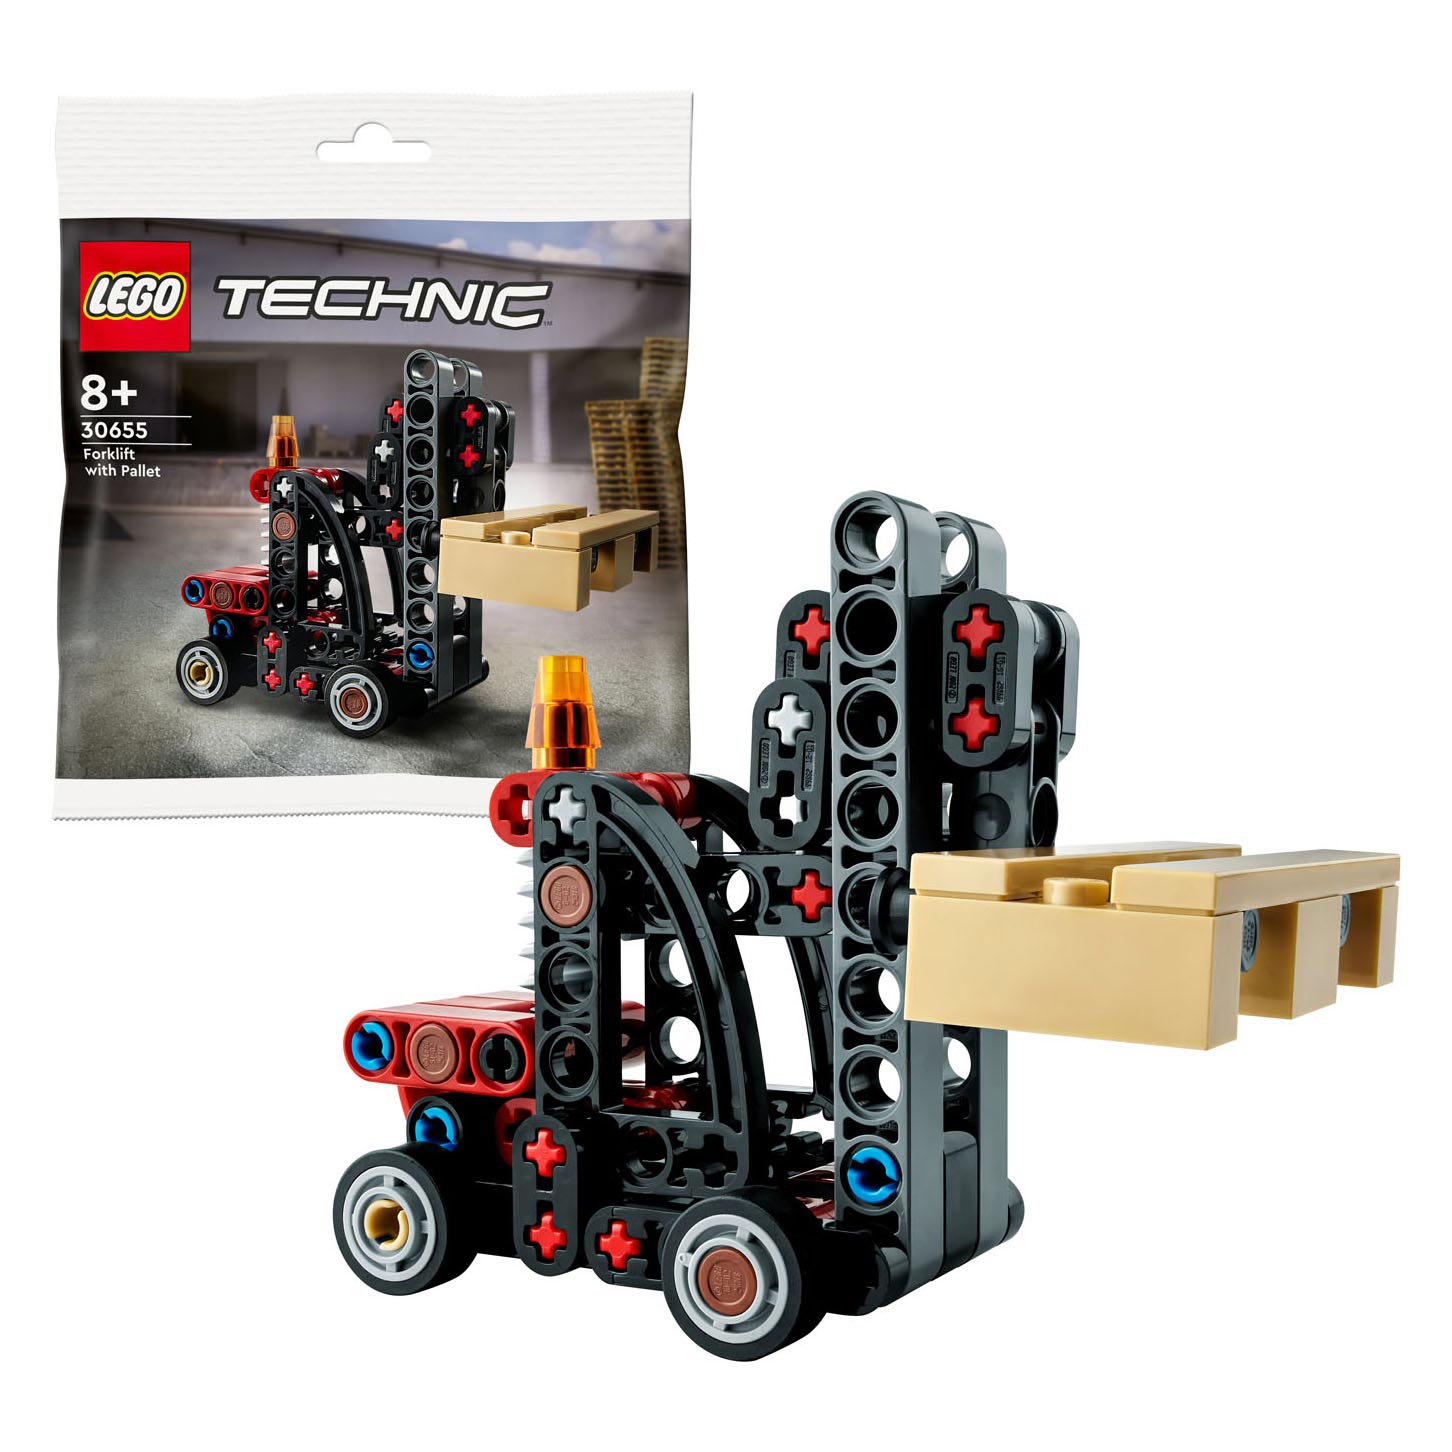 Lego Technic 30655 Heftruck met Pallet